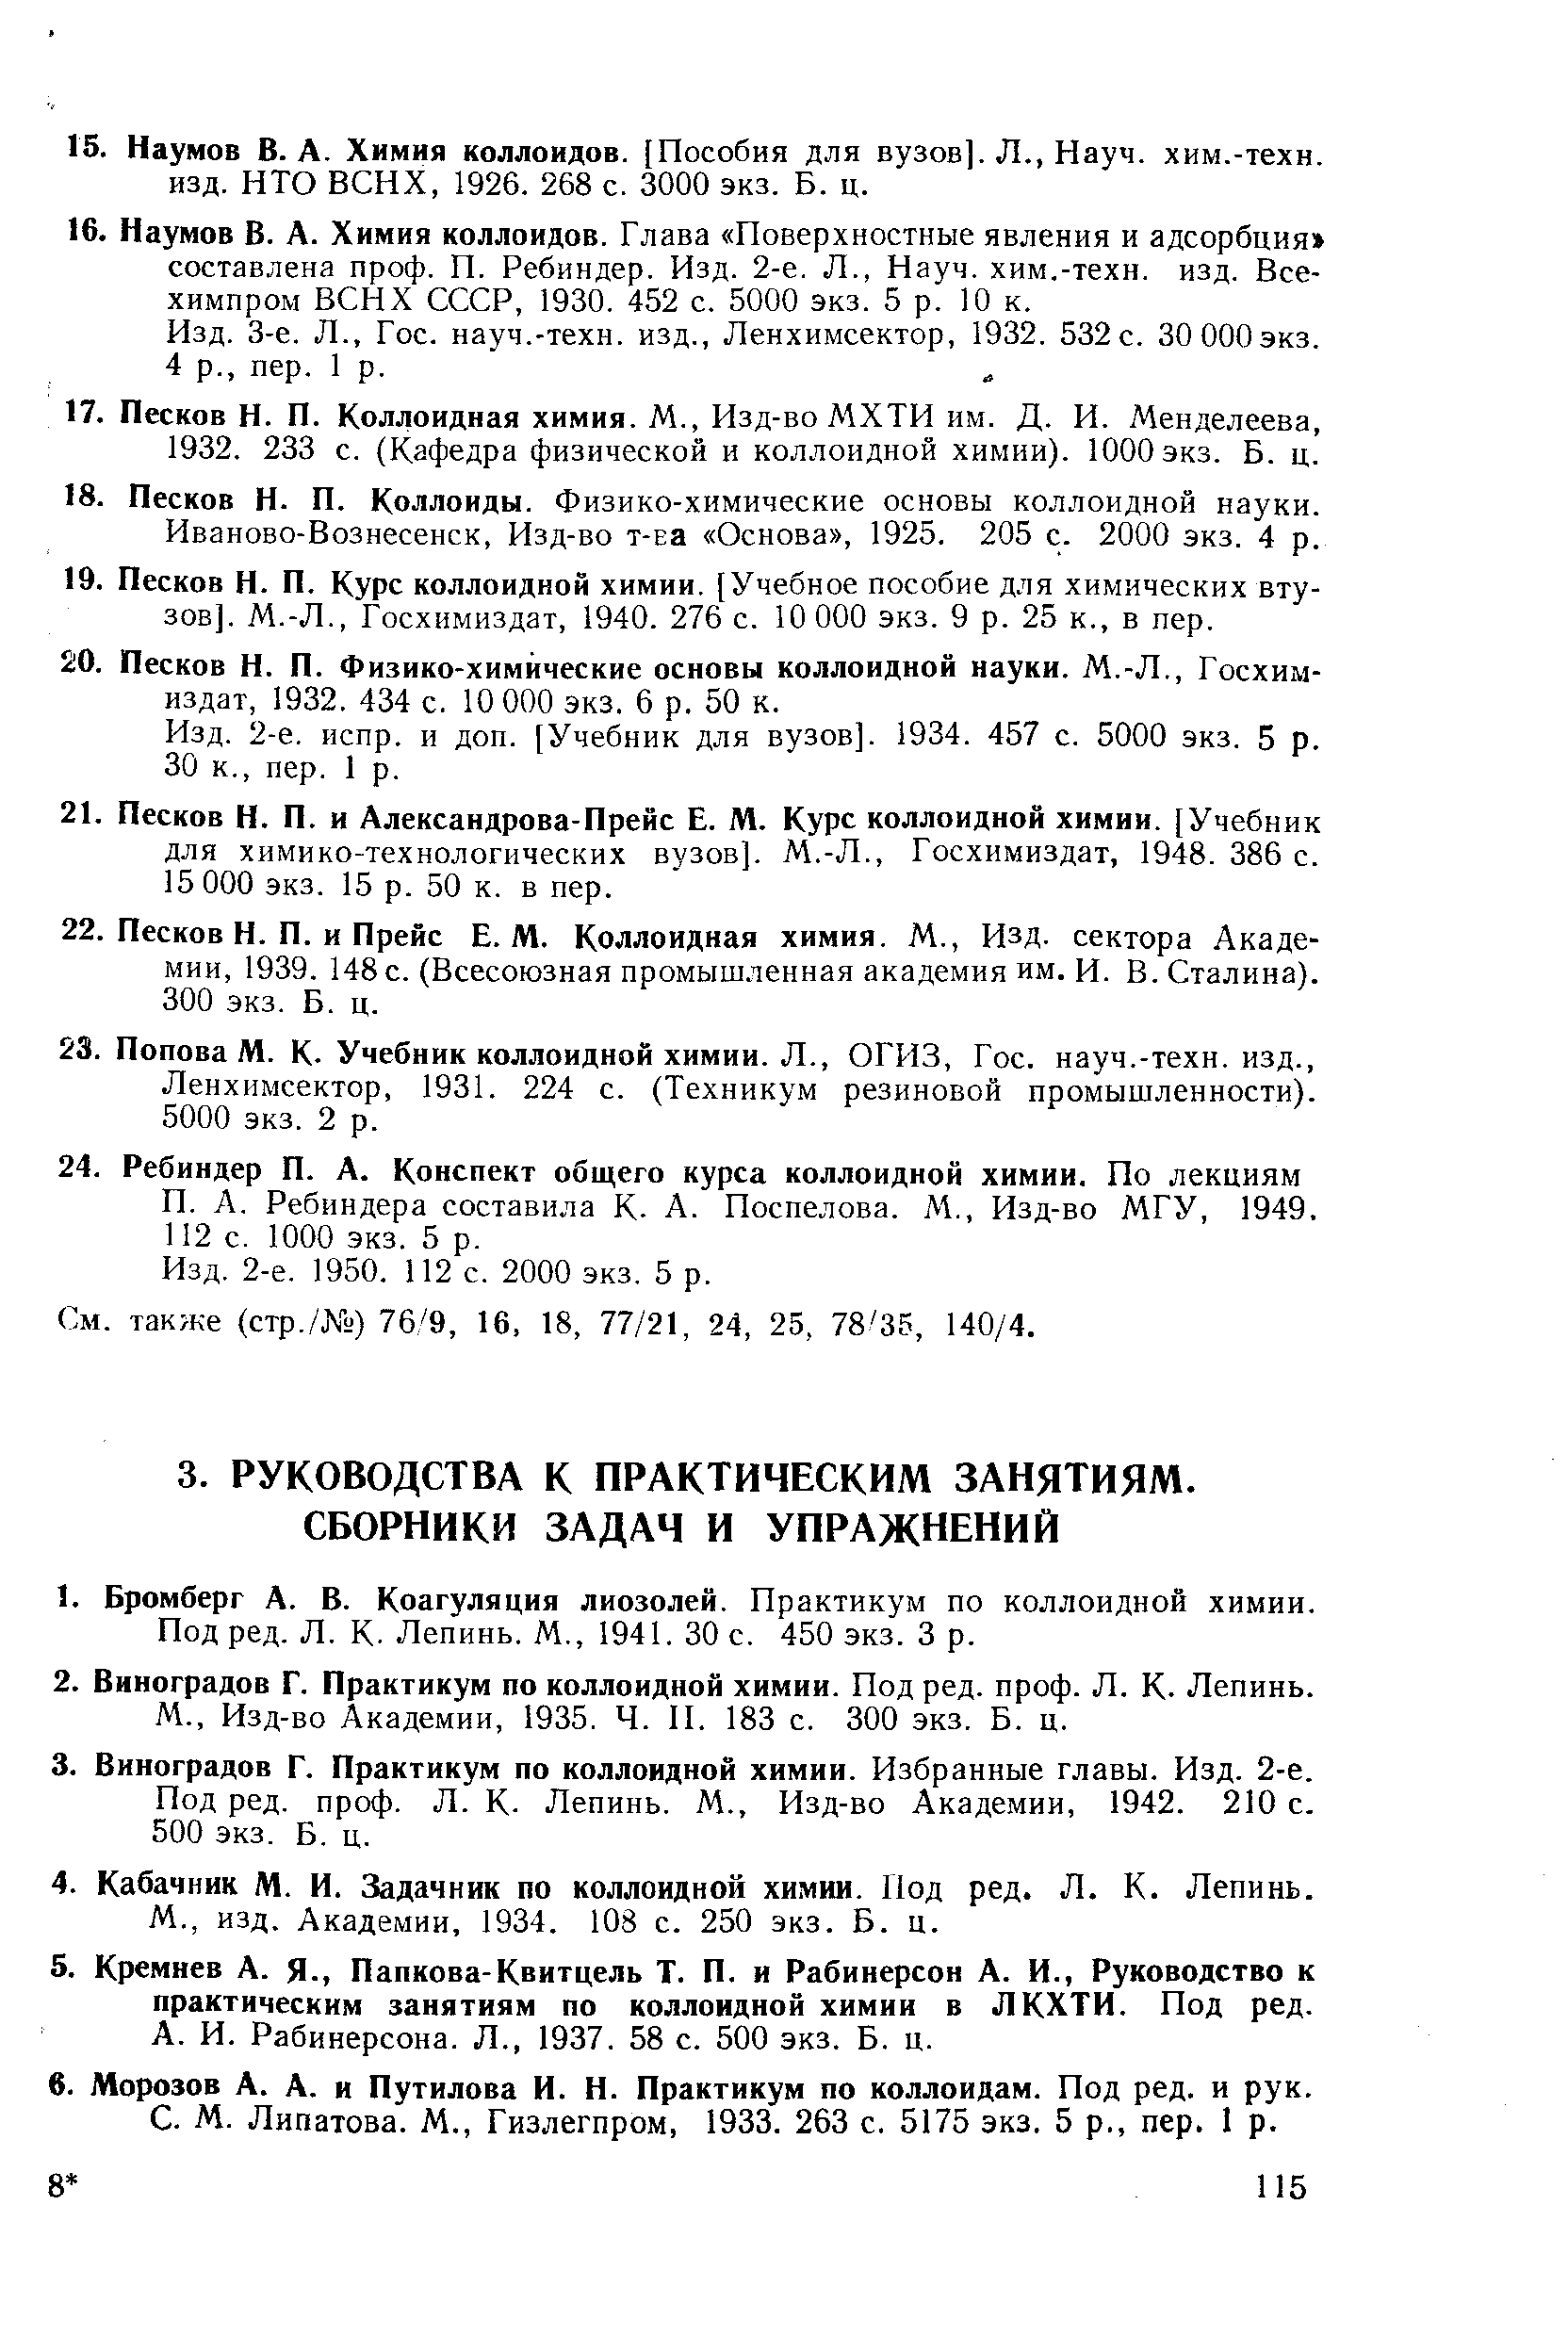 Под ред. Л. К. Лепинь. М., 1941. 30 с. 450 экз. 3 р.